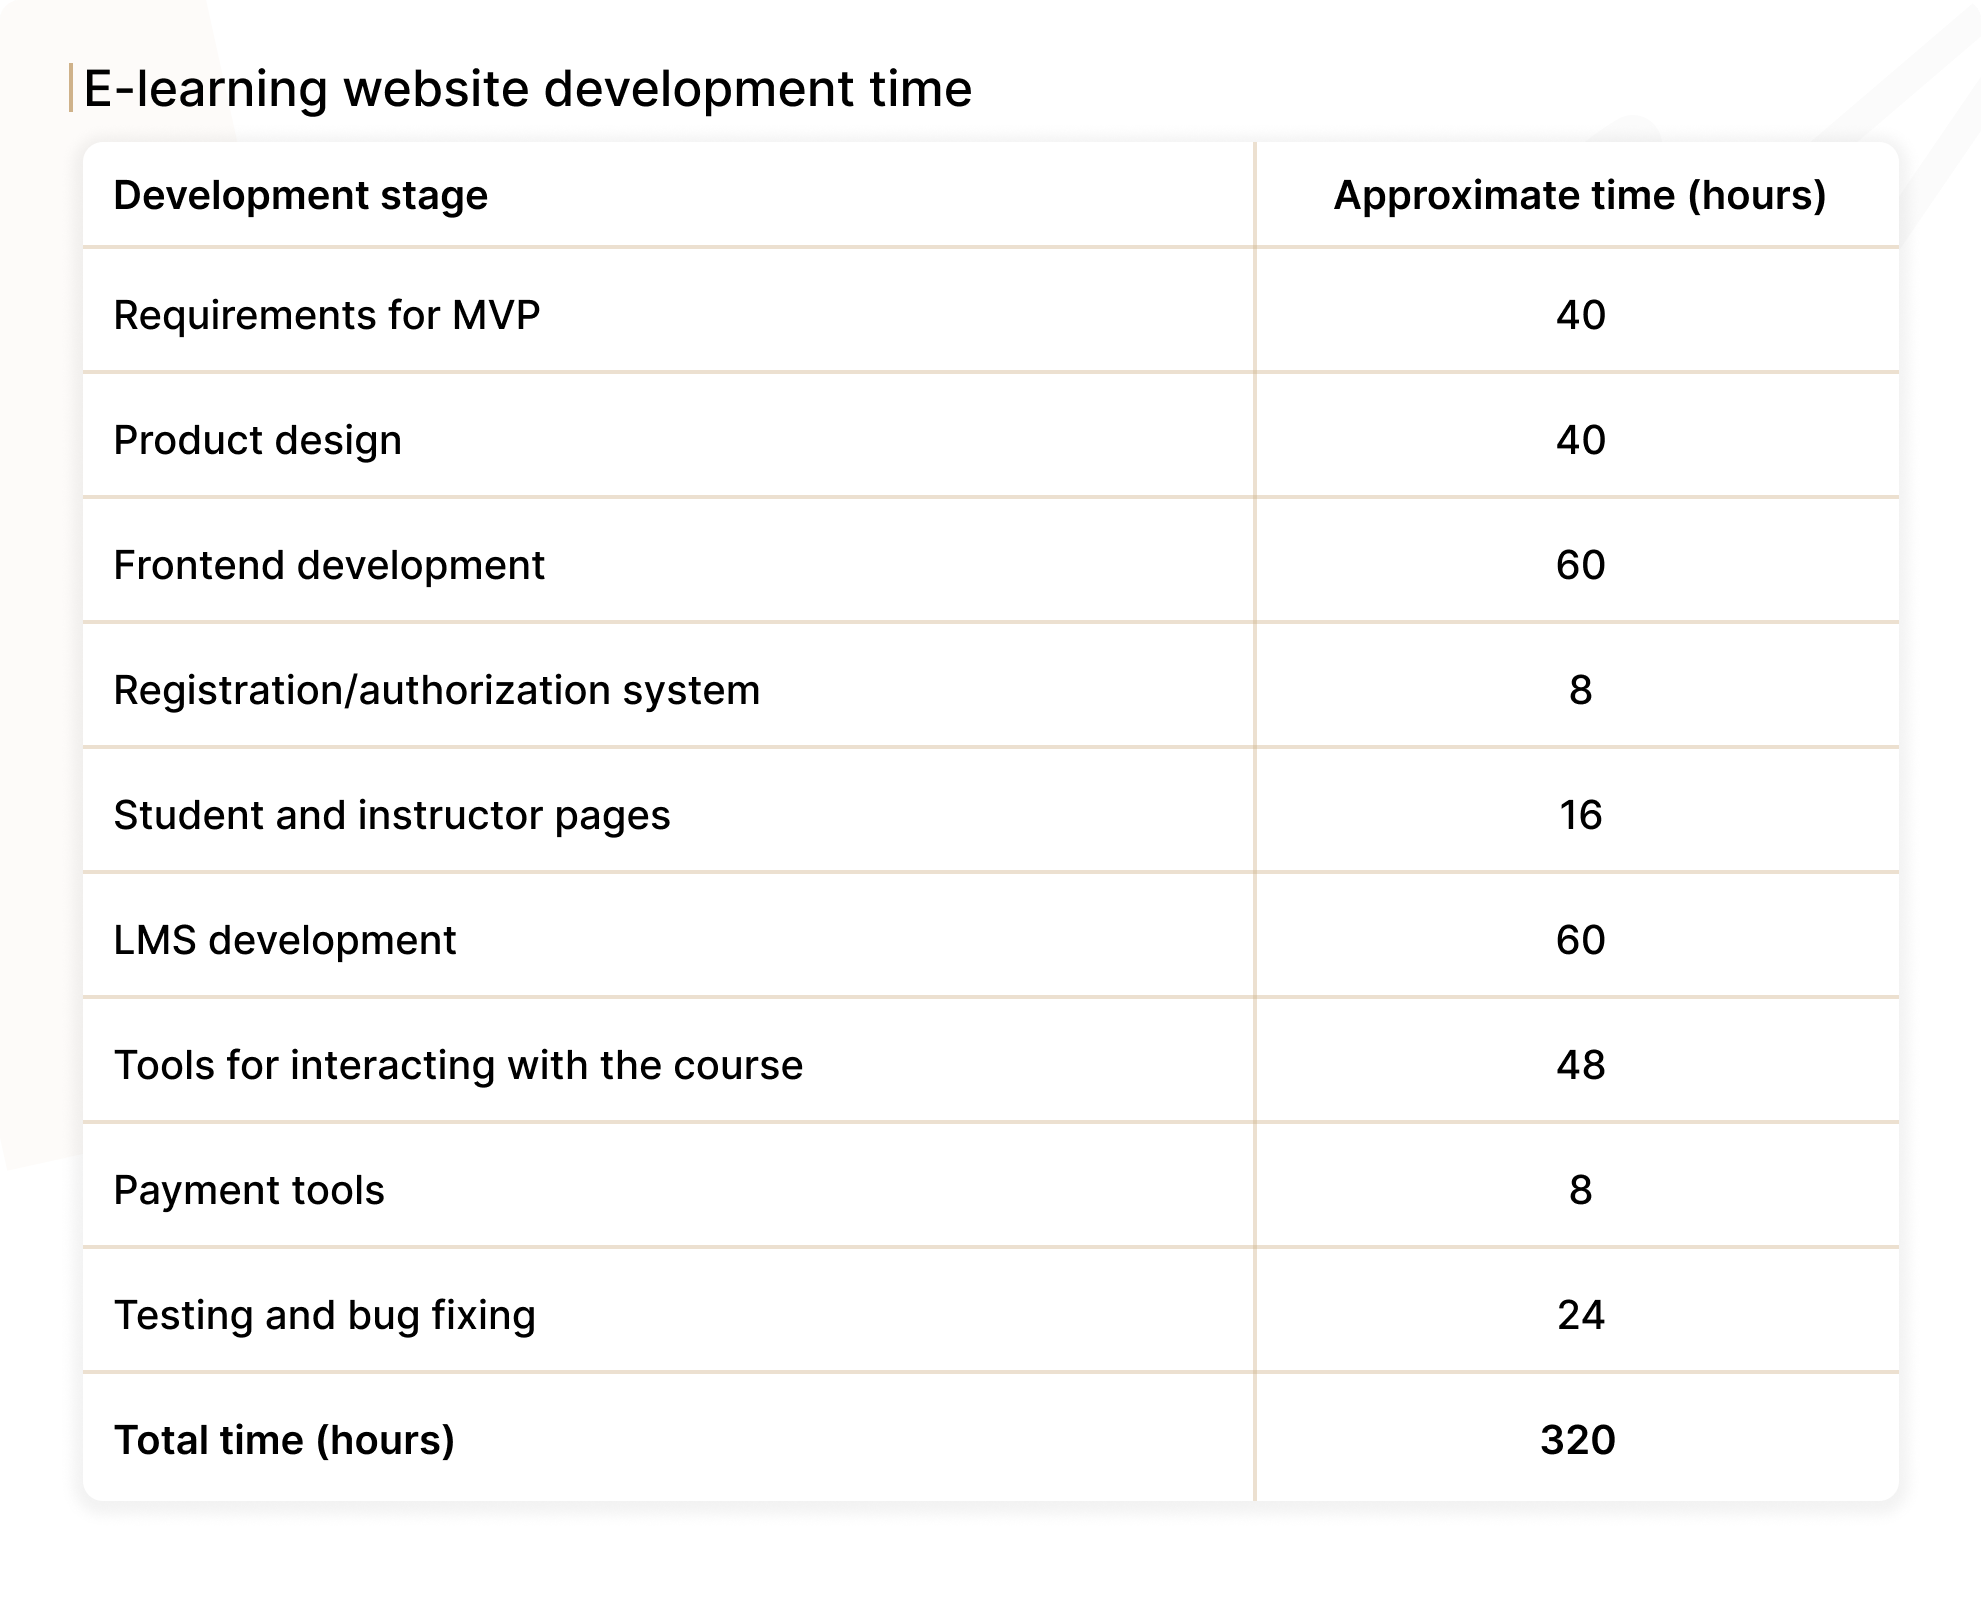 E-learning website development time